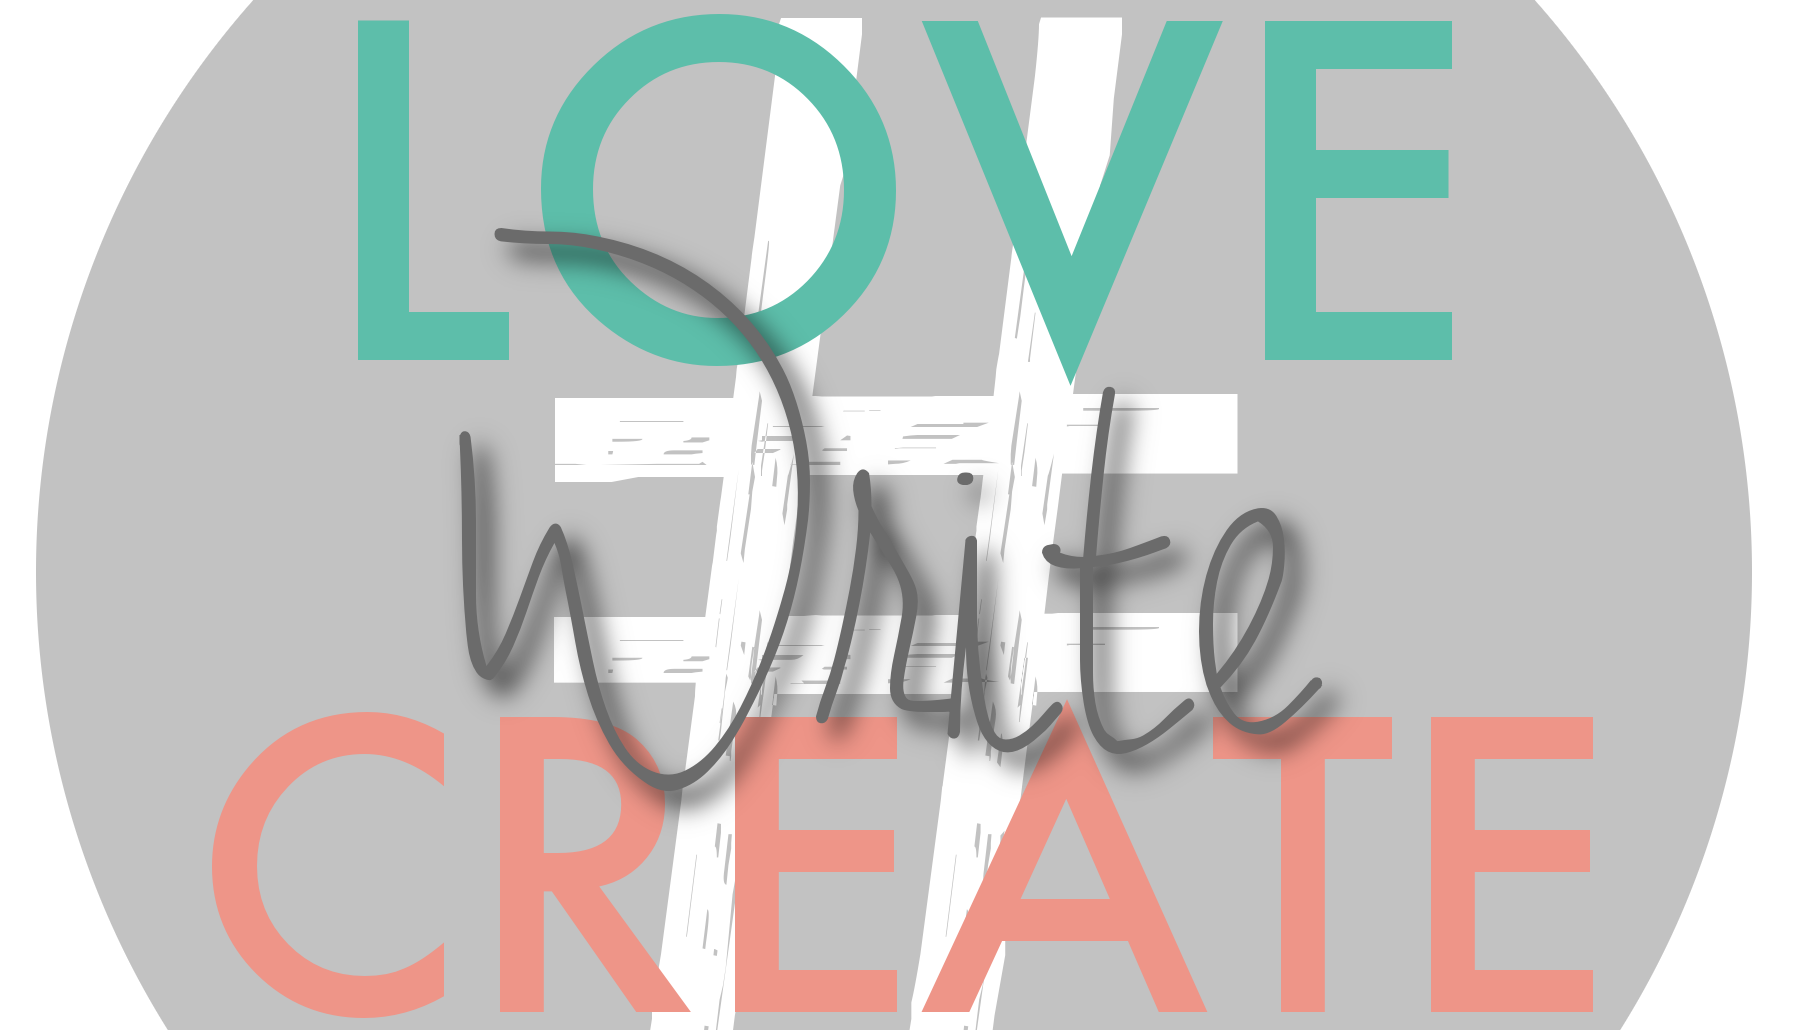 3rd Times A Charm #LoveWriteCreate